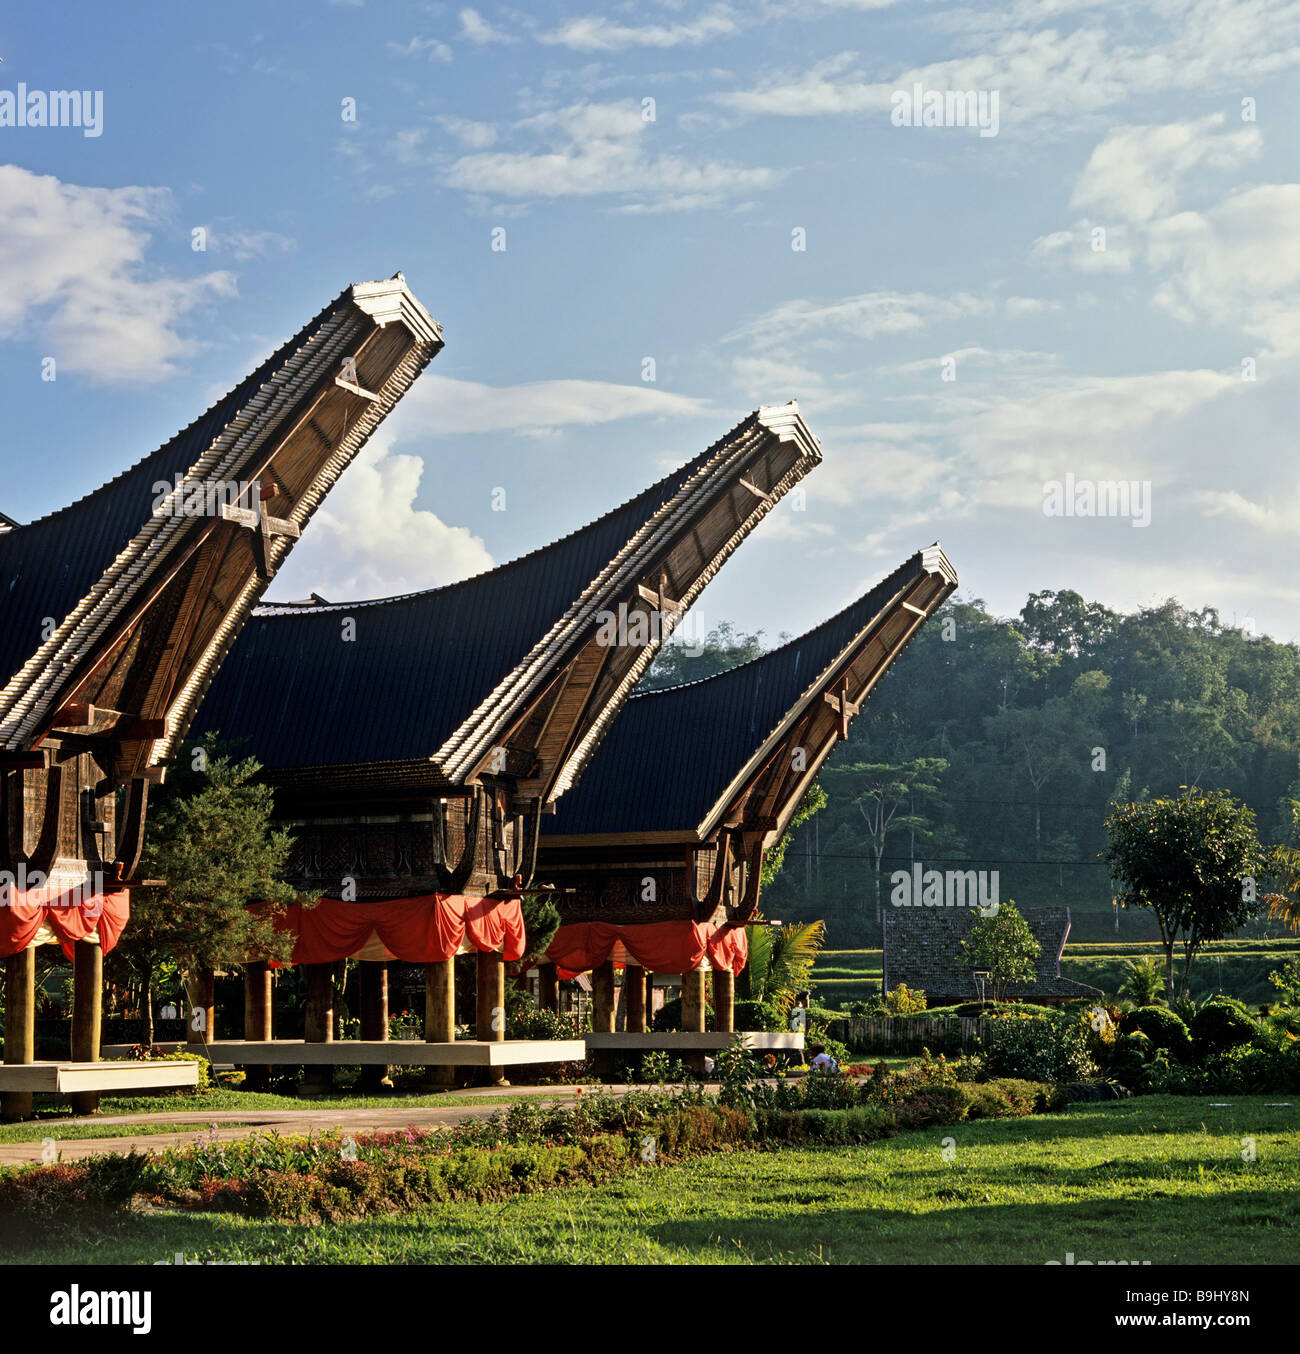 Maison Toraja, gable, hôtel, village Toraja de Sulawesi, Indonésie, Asie du sud-est Banque D'Images